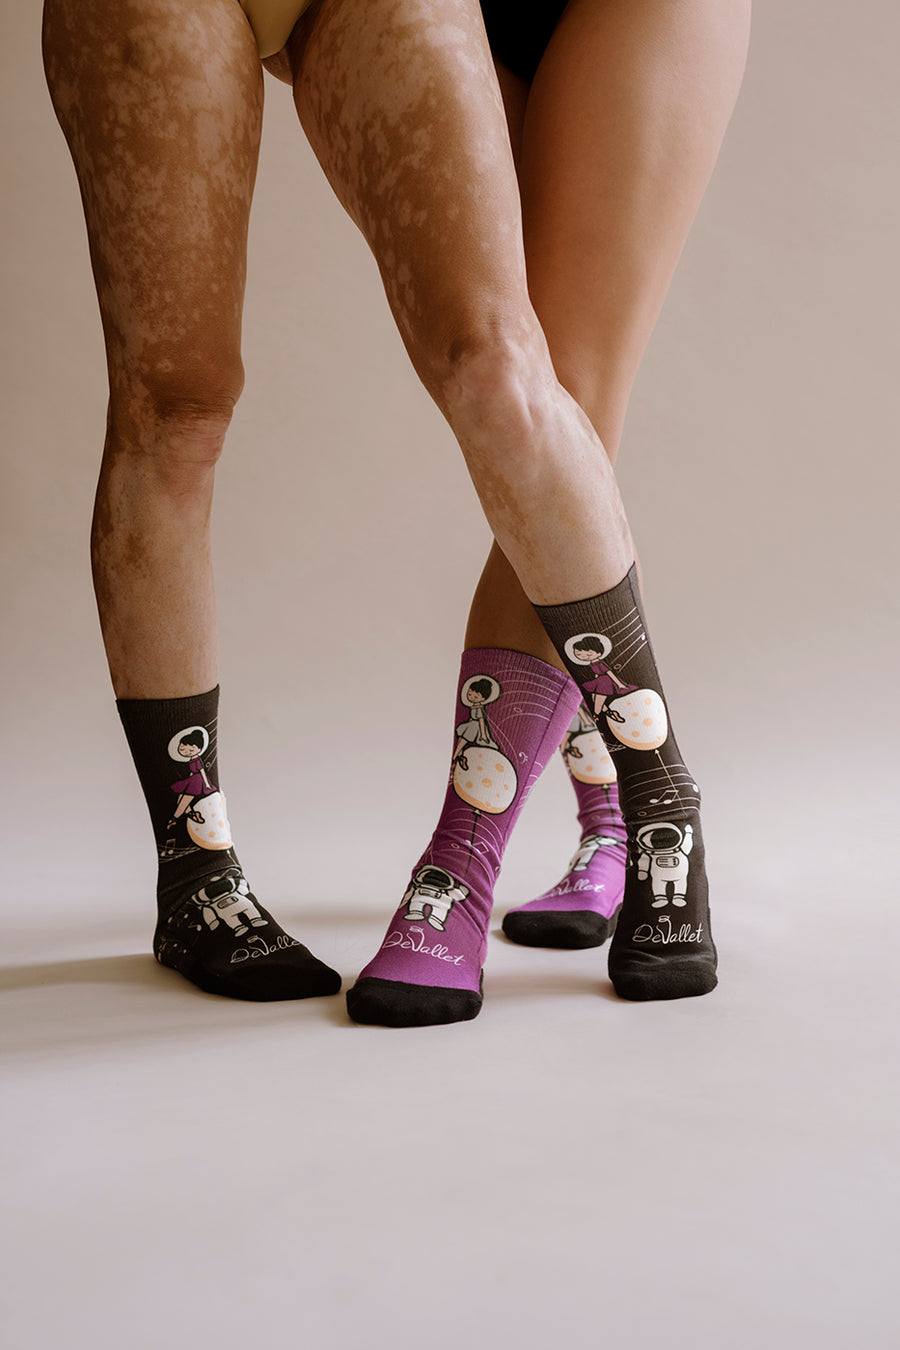 Country Weekend Leg Warmers – Sock Dreams